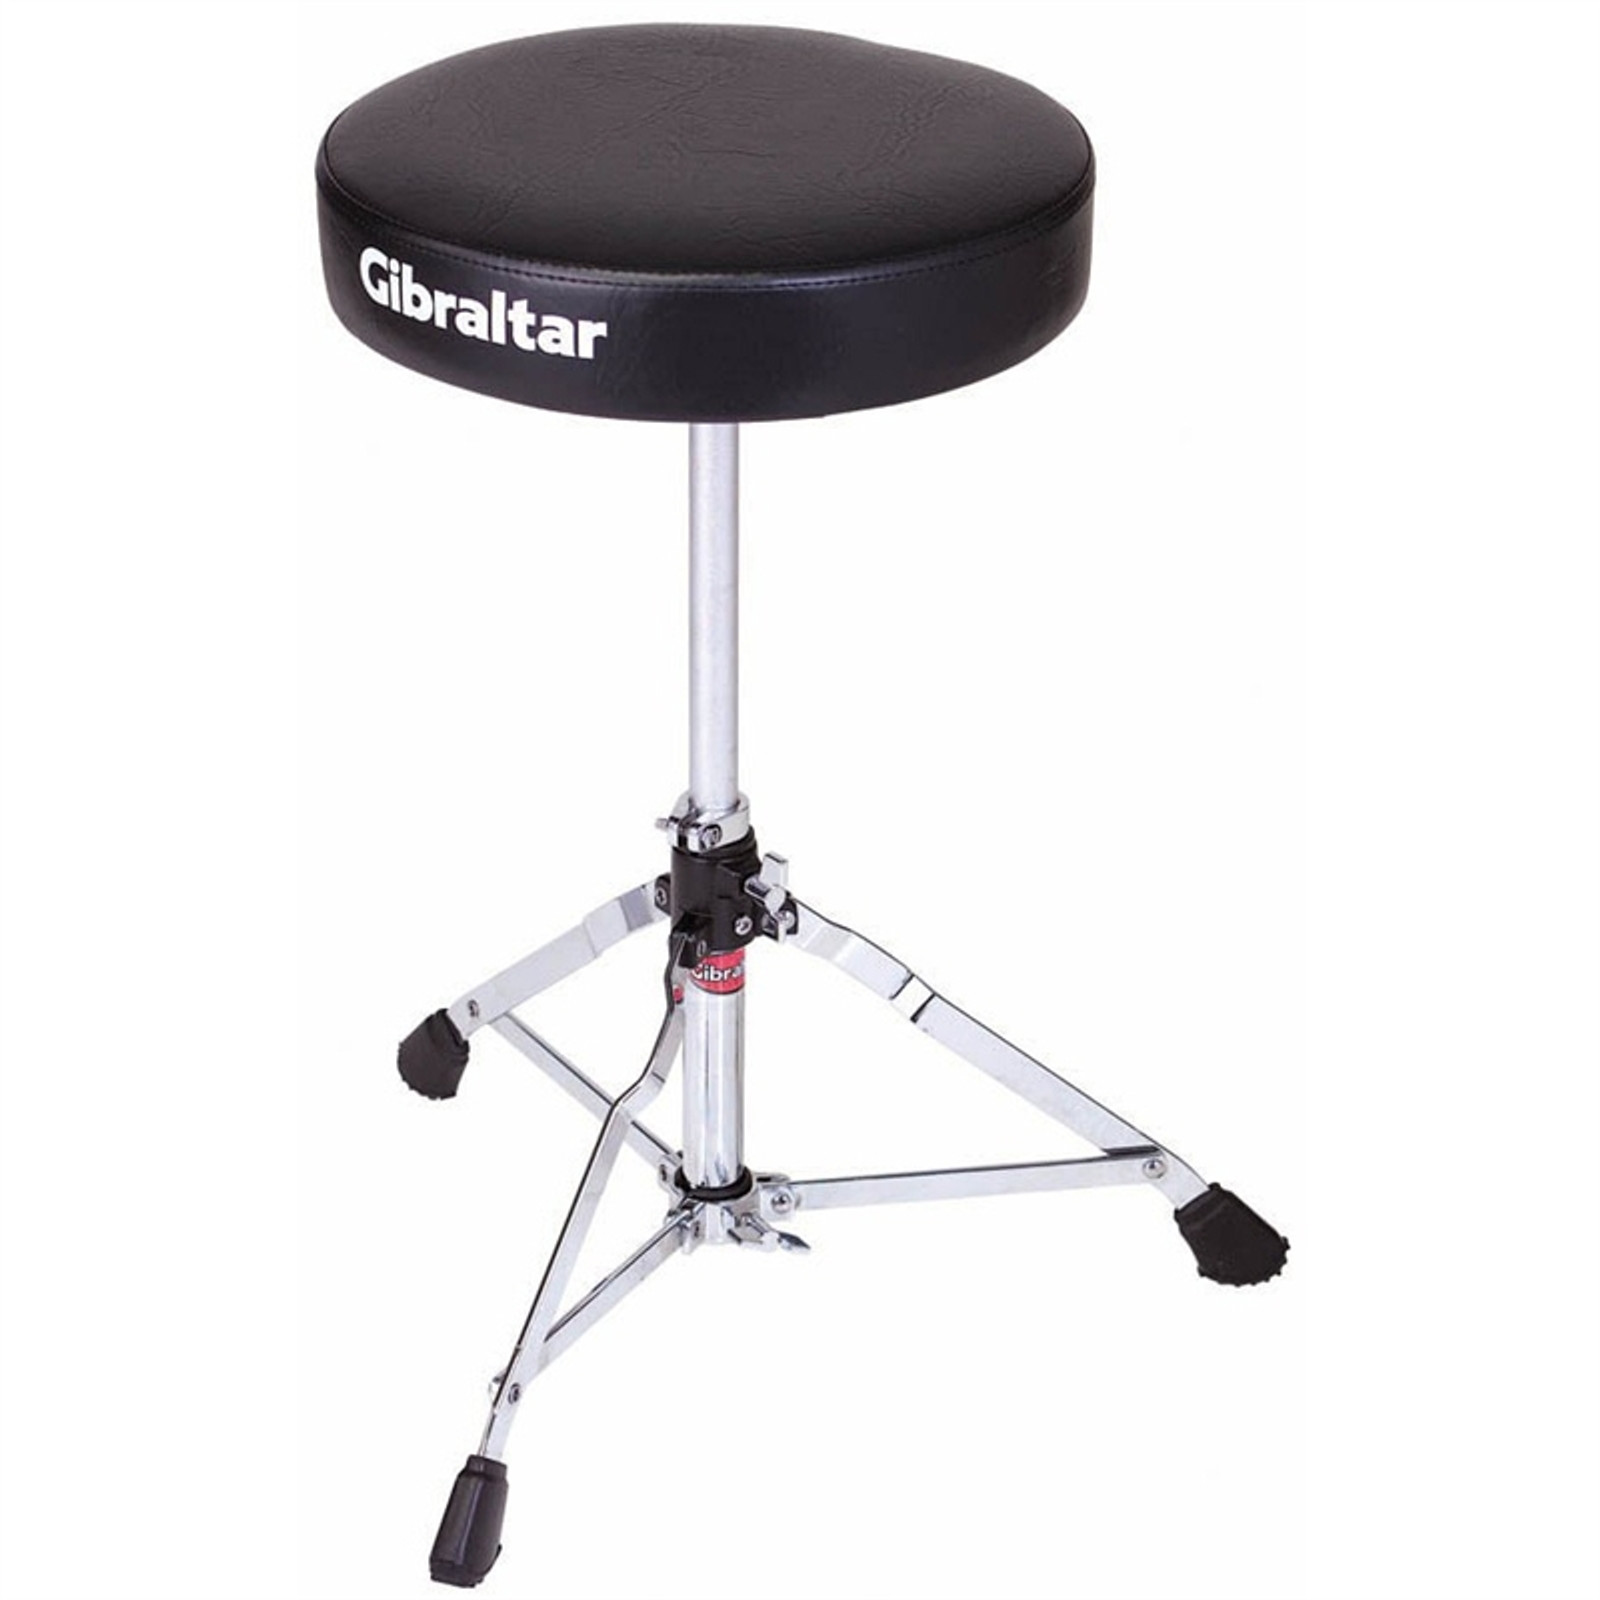 Gibraltar Lightweight Compact Drum Throne